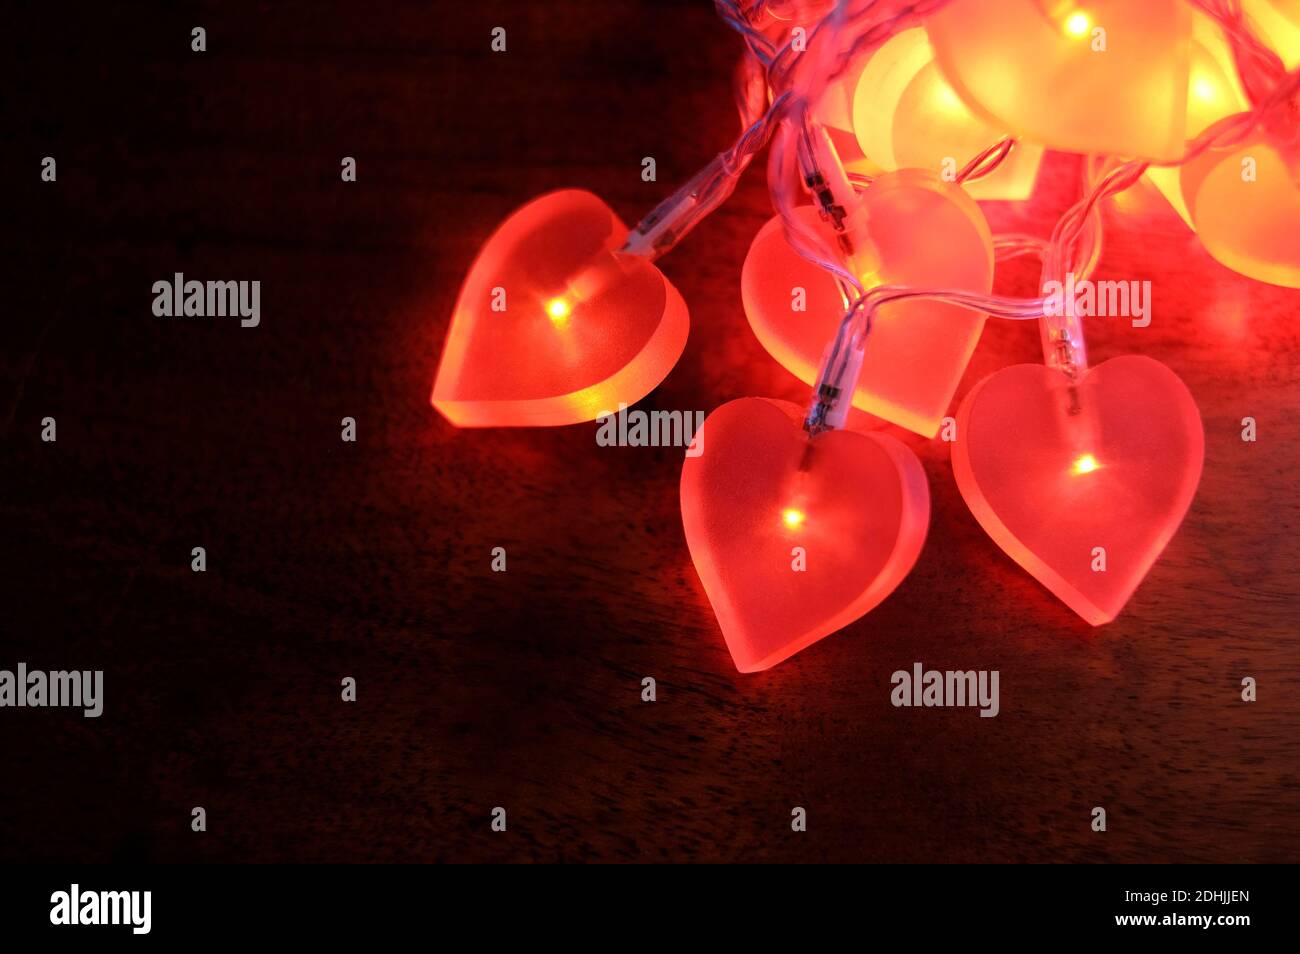 illuminated red heart lights on dark background Stock Photo